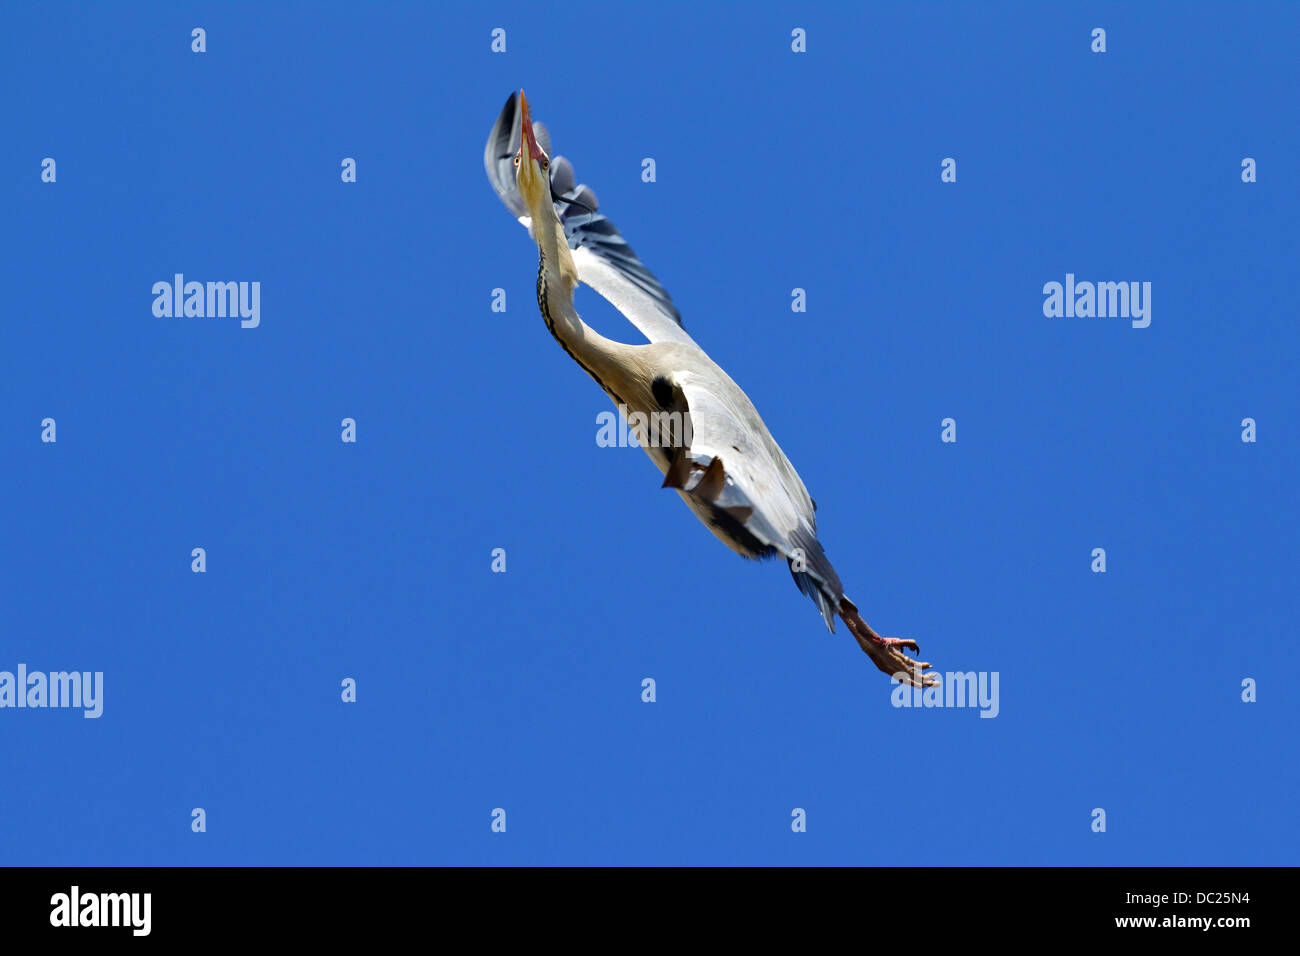 Airone cenerino / Airone cinerino (Ardea cinerea) in volo volare in aria ascendente deriva termica contro il cielo blu Foto Stock